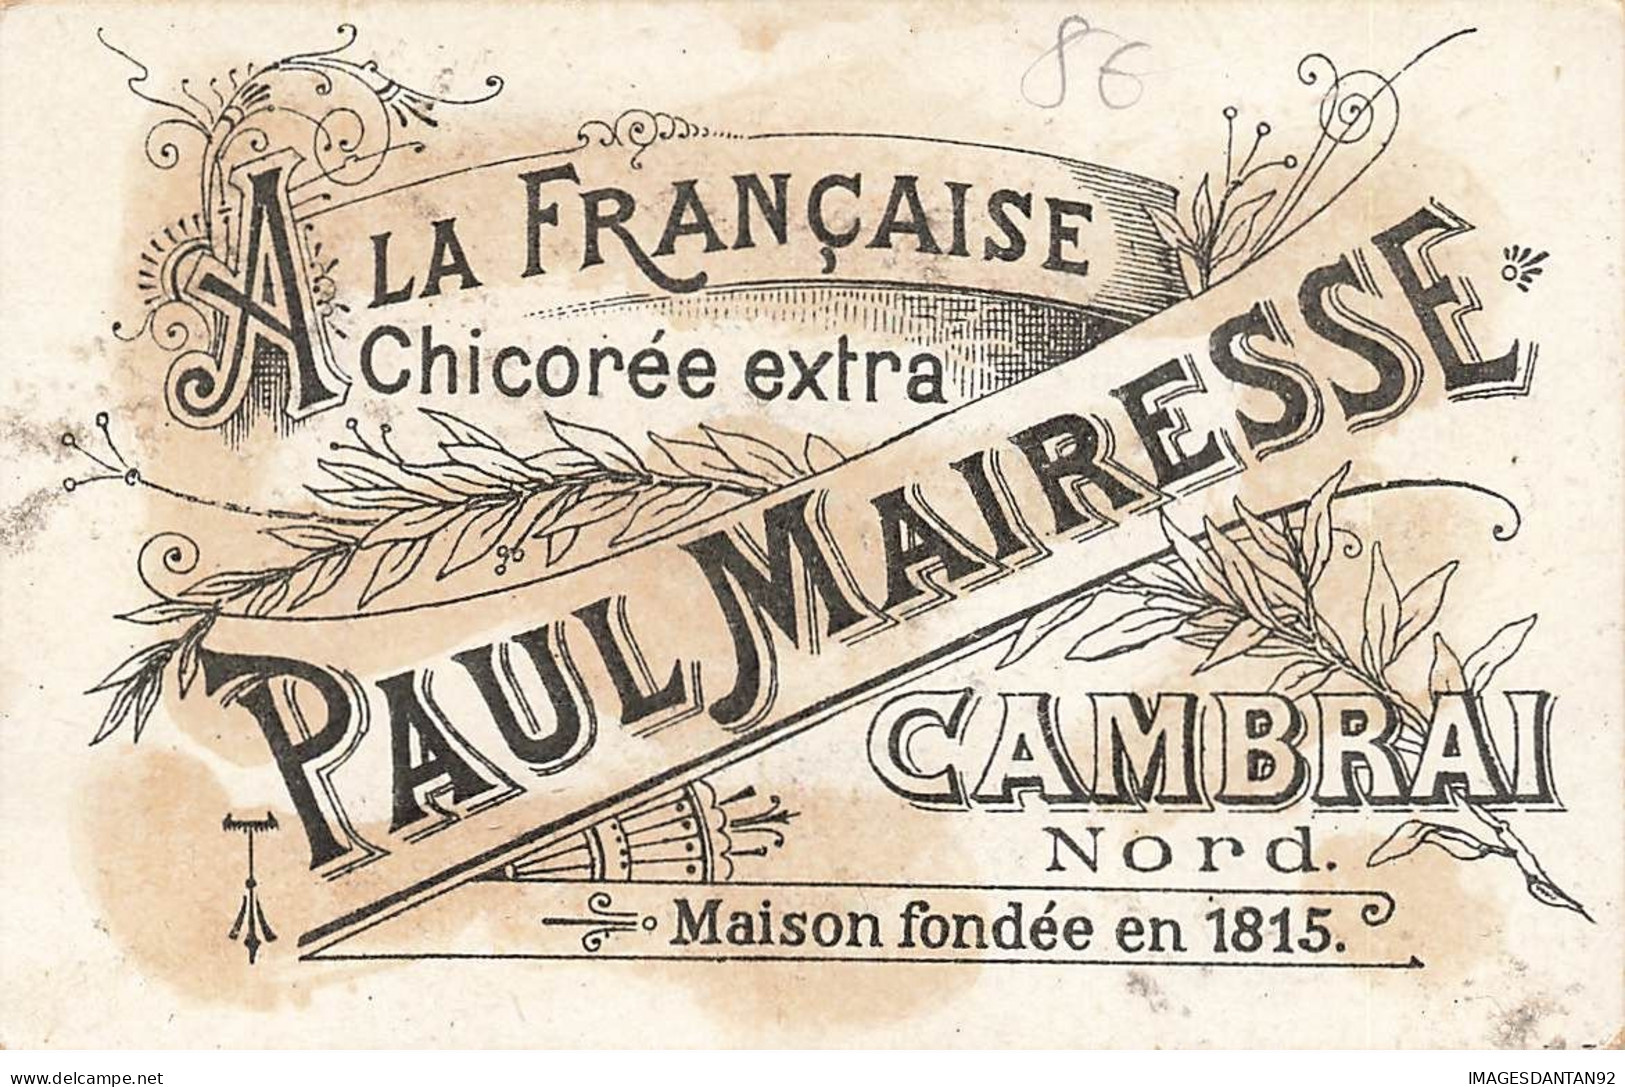 CAMBRAI A LA FRANCAISE PAUL MAIRESSE CHICOREE COUPLE SERVEUSE - Thé & Café